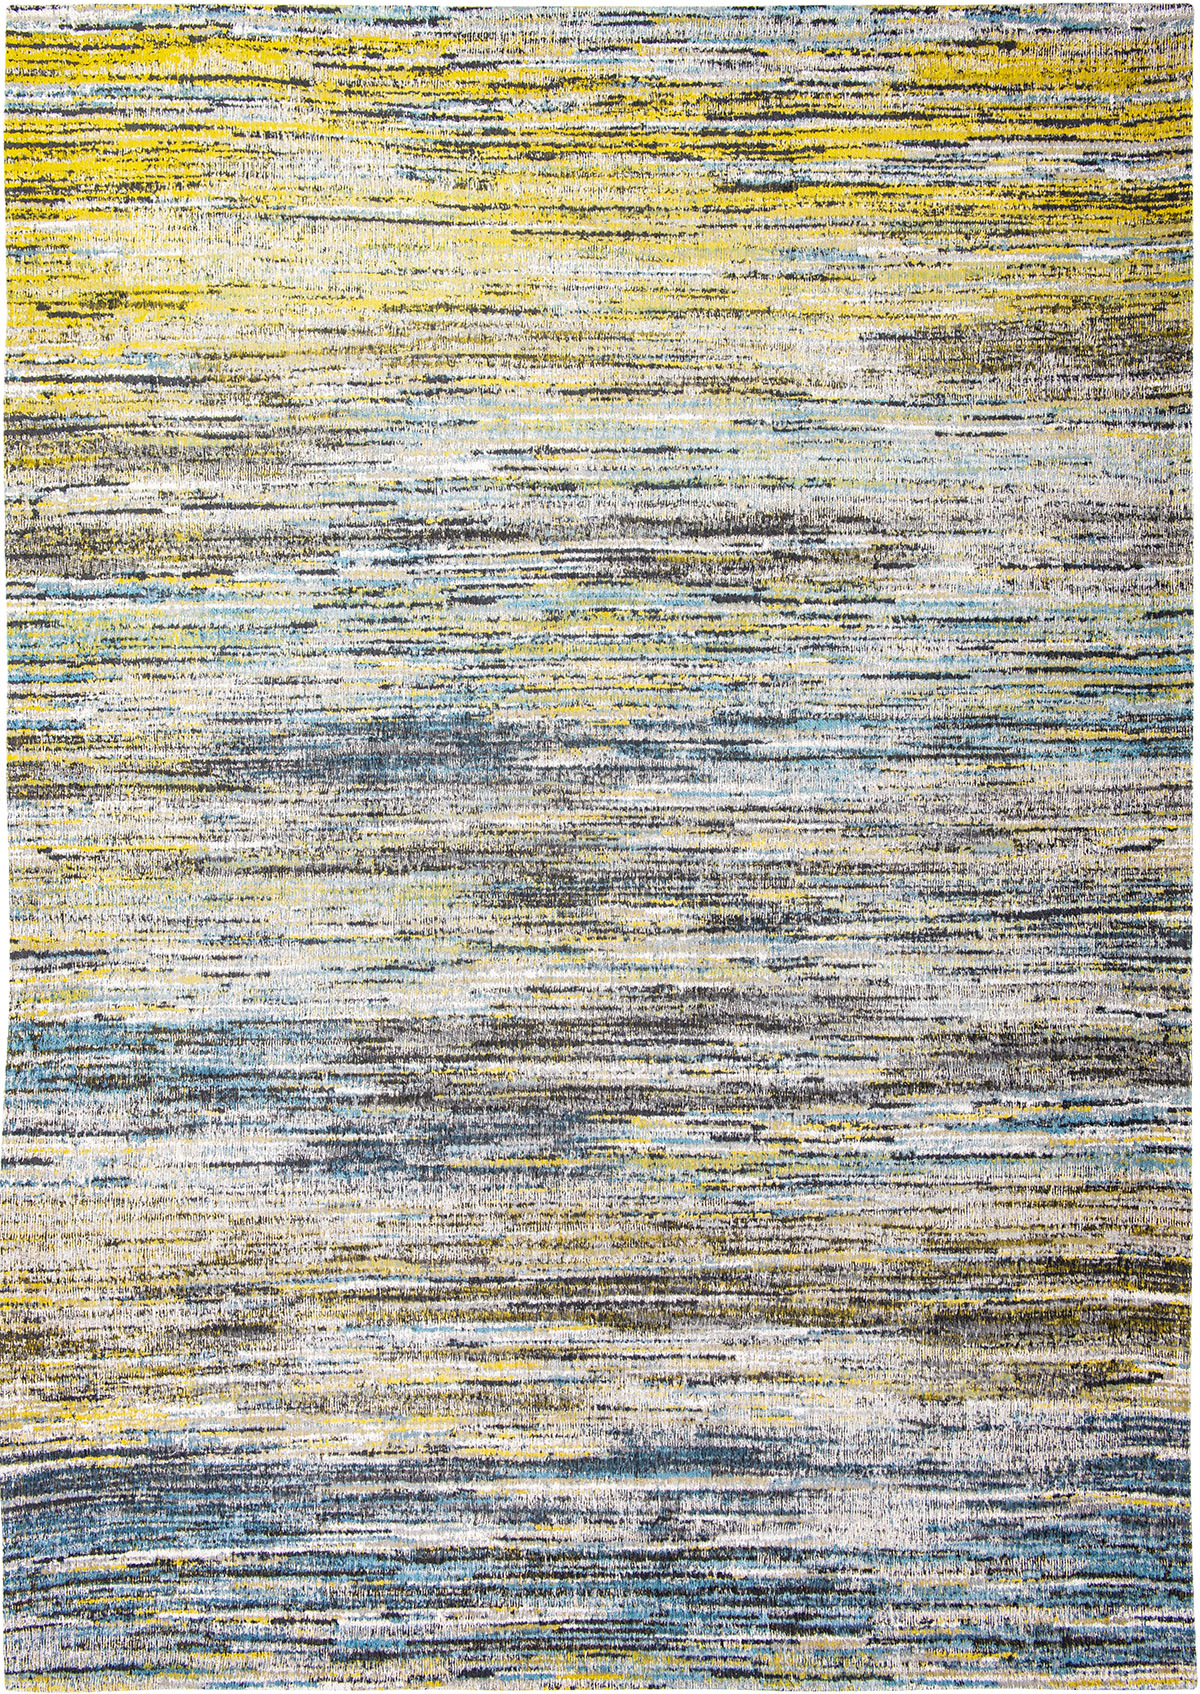 Żółto Niebieski Dywan w Paski - BLUE YELLOW MIX 8873 - Rozmiar: 170x240 cm